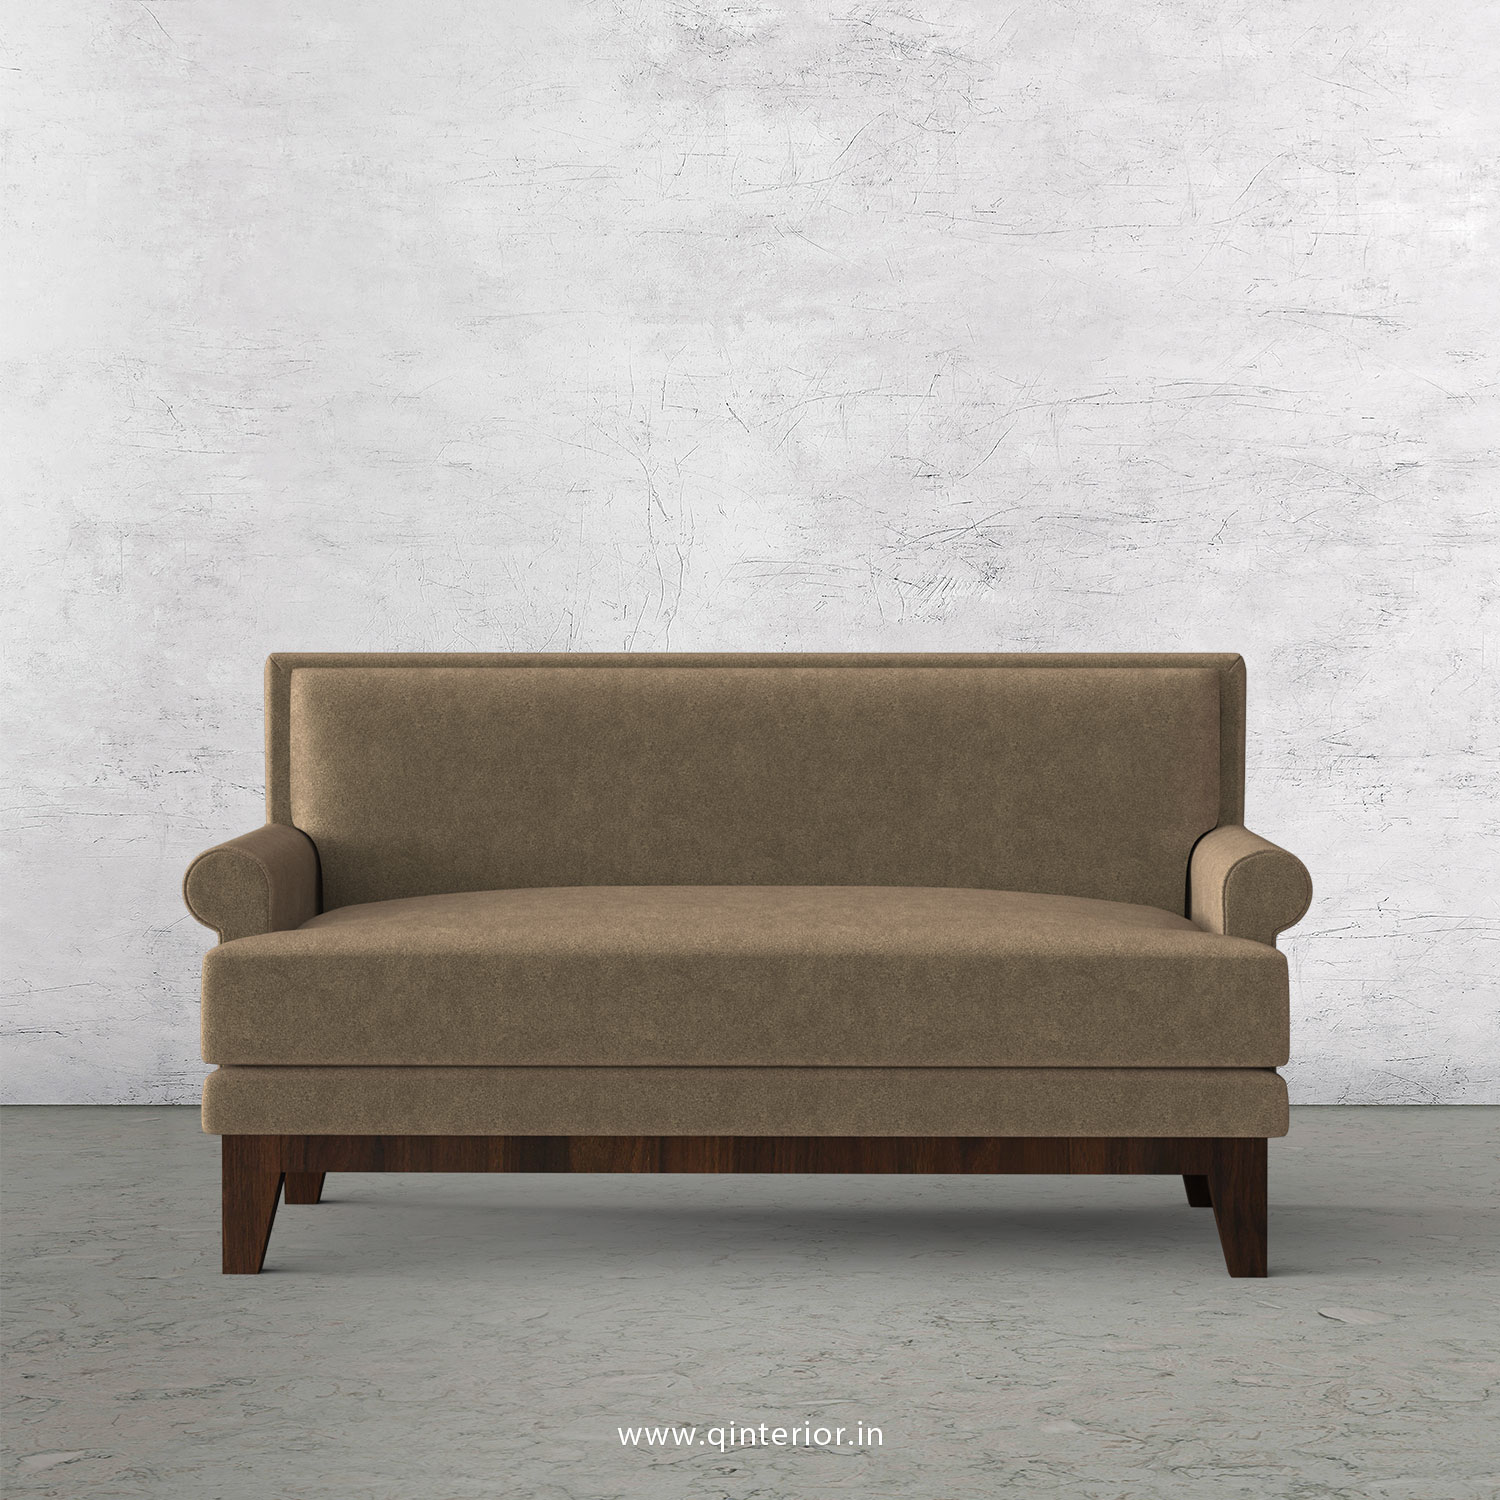 Aviana 2 Seater Sofa in Velvet Fabric - SFA001 VL11